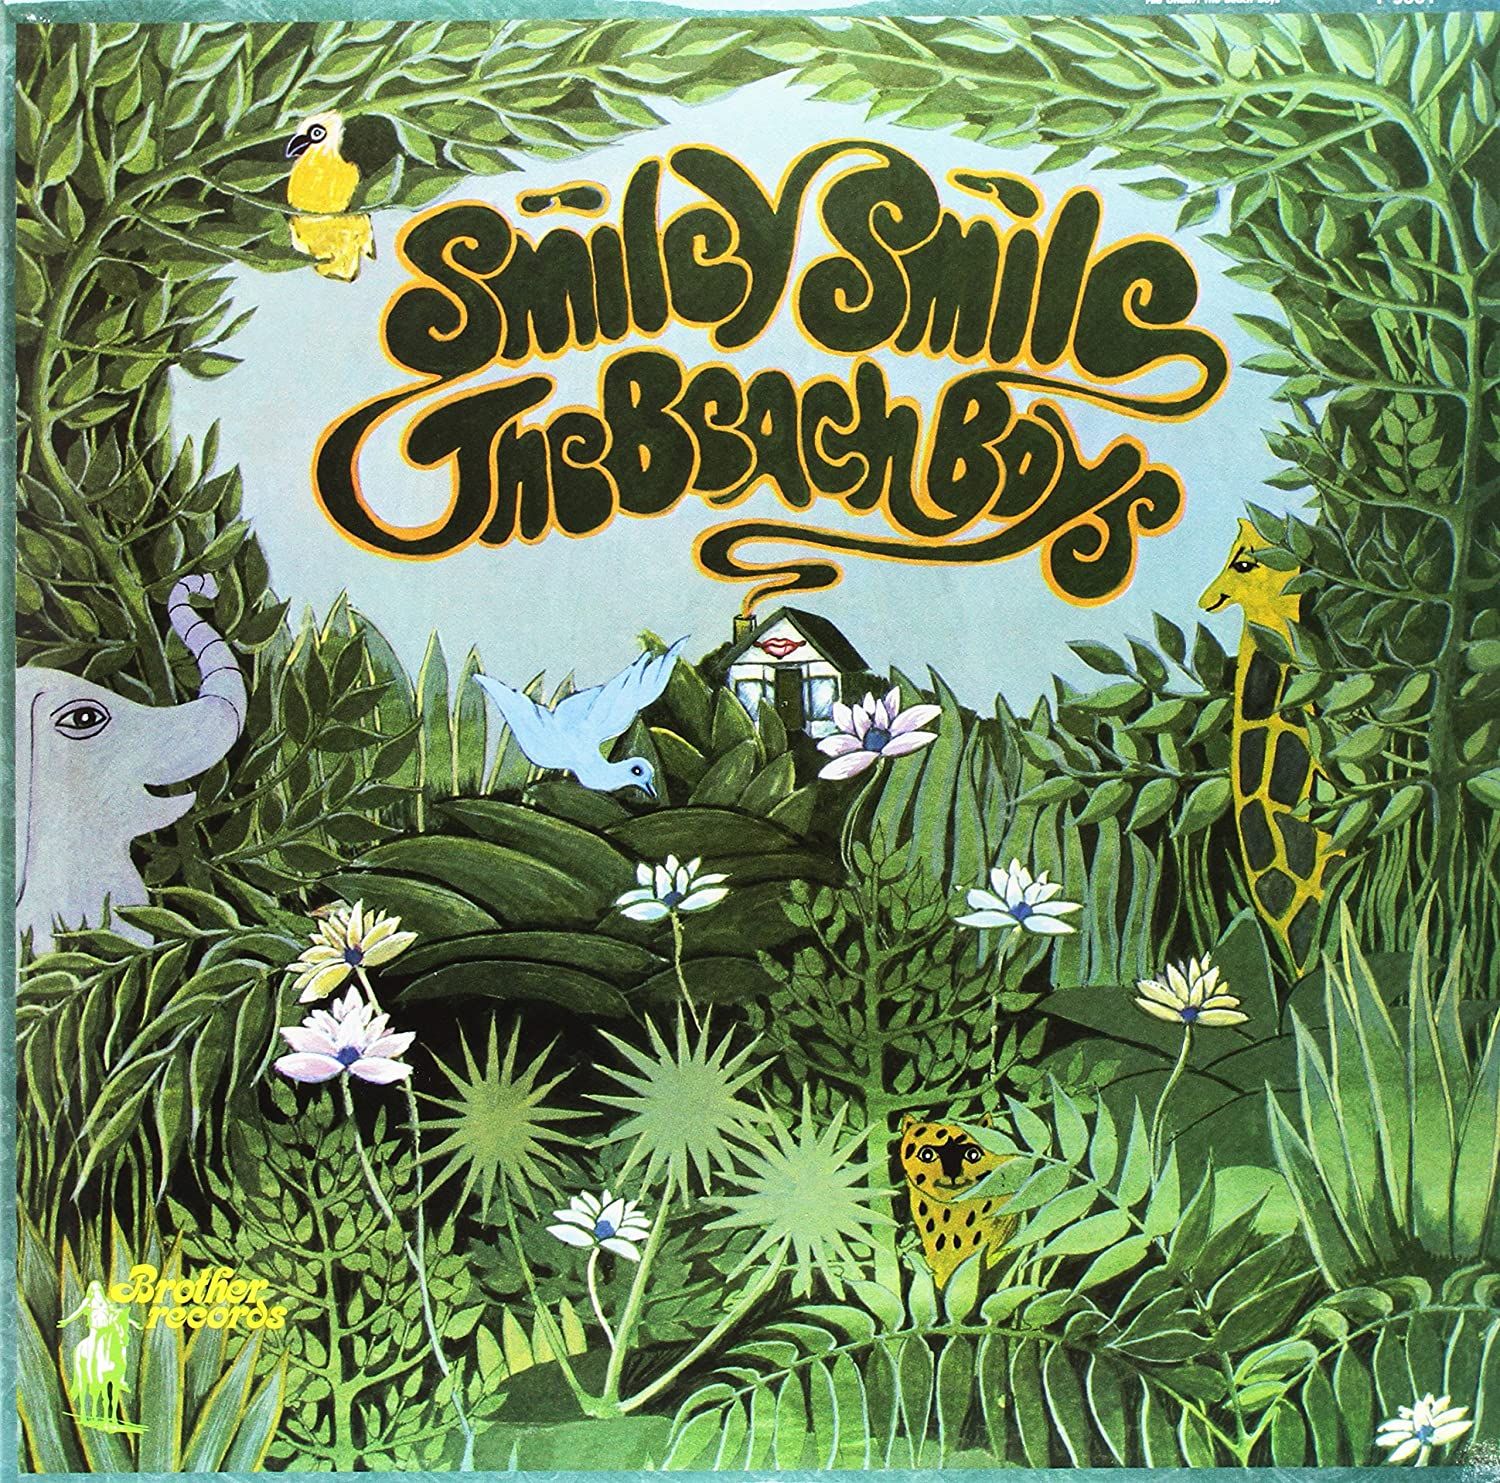 Smiley Smile (09-1967 USA - 11-1967 UK)